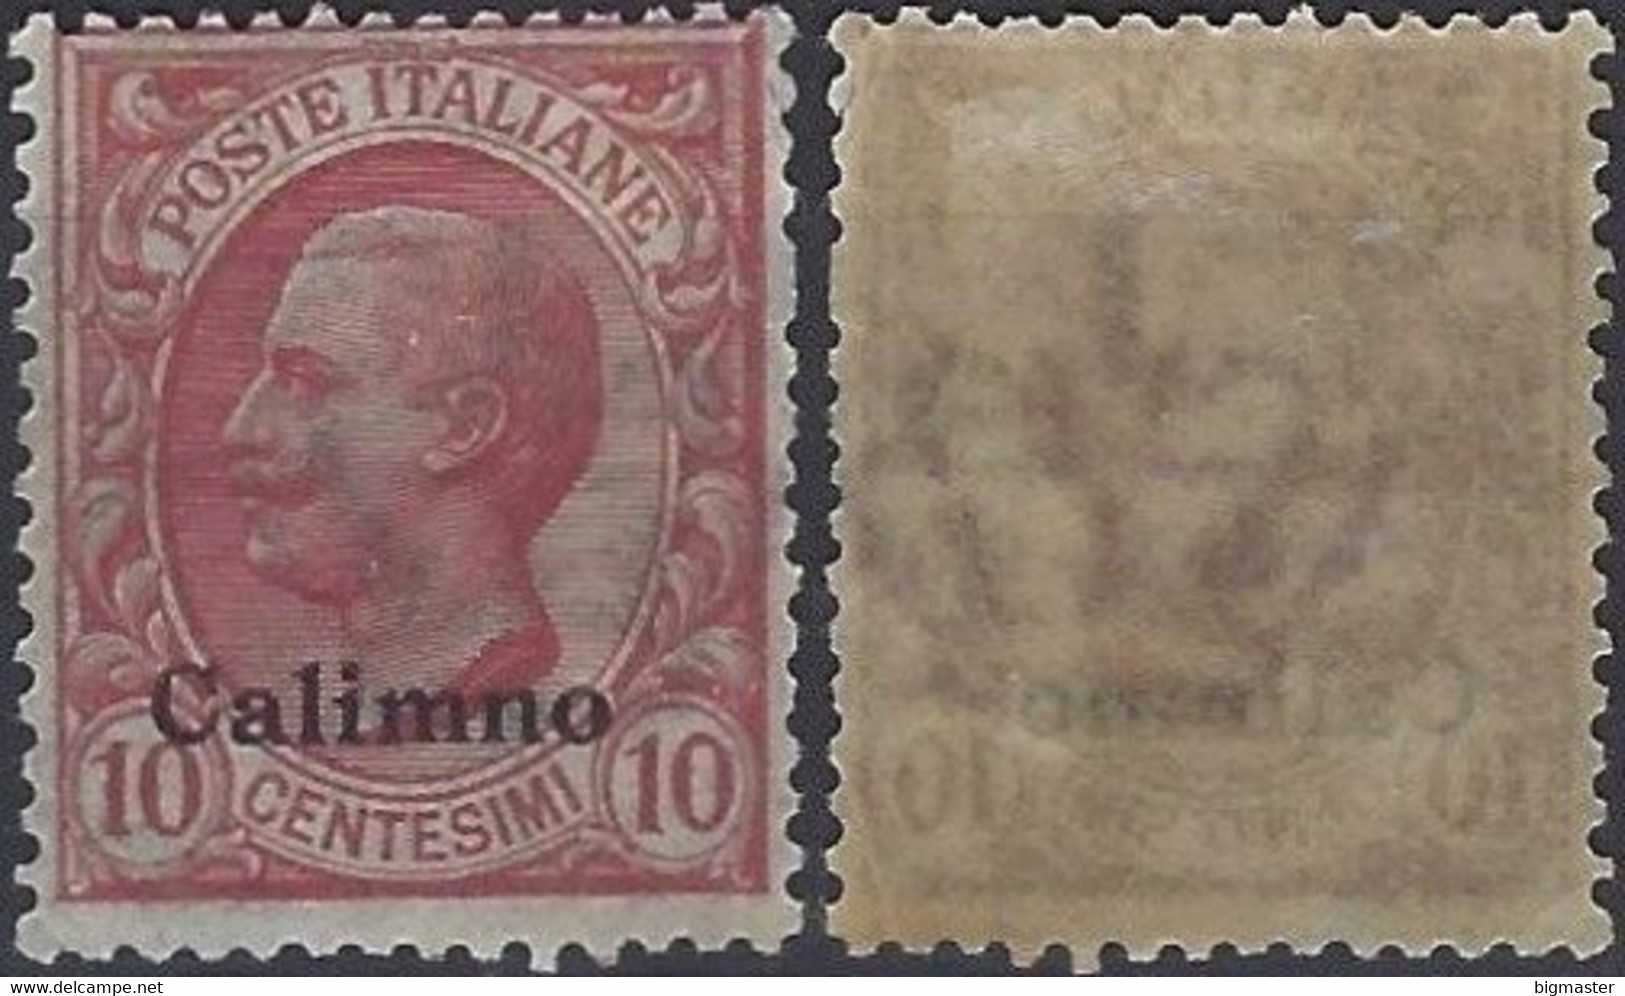 1912 Regno D'Italia IG 1912 IT-EG CA3 10c Italy Stamps Overprinted 'Calimno' New - Egée (Calino)